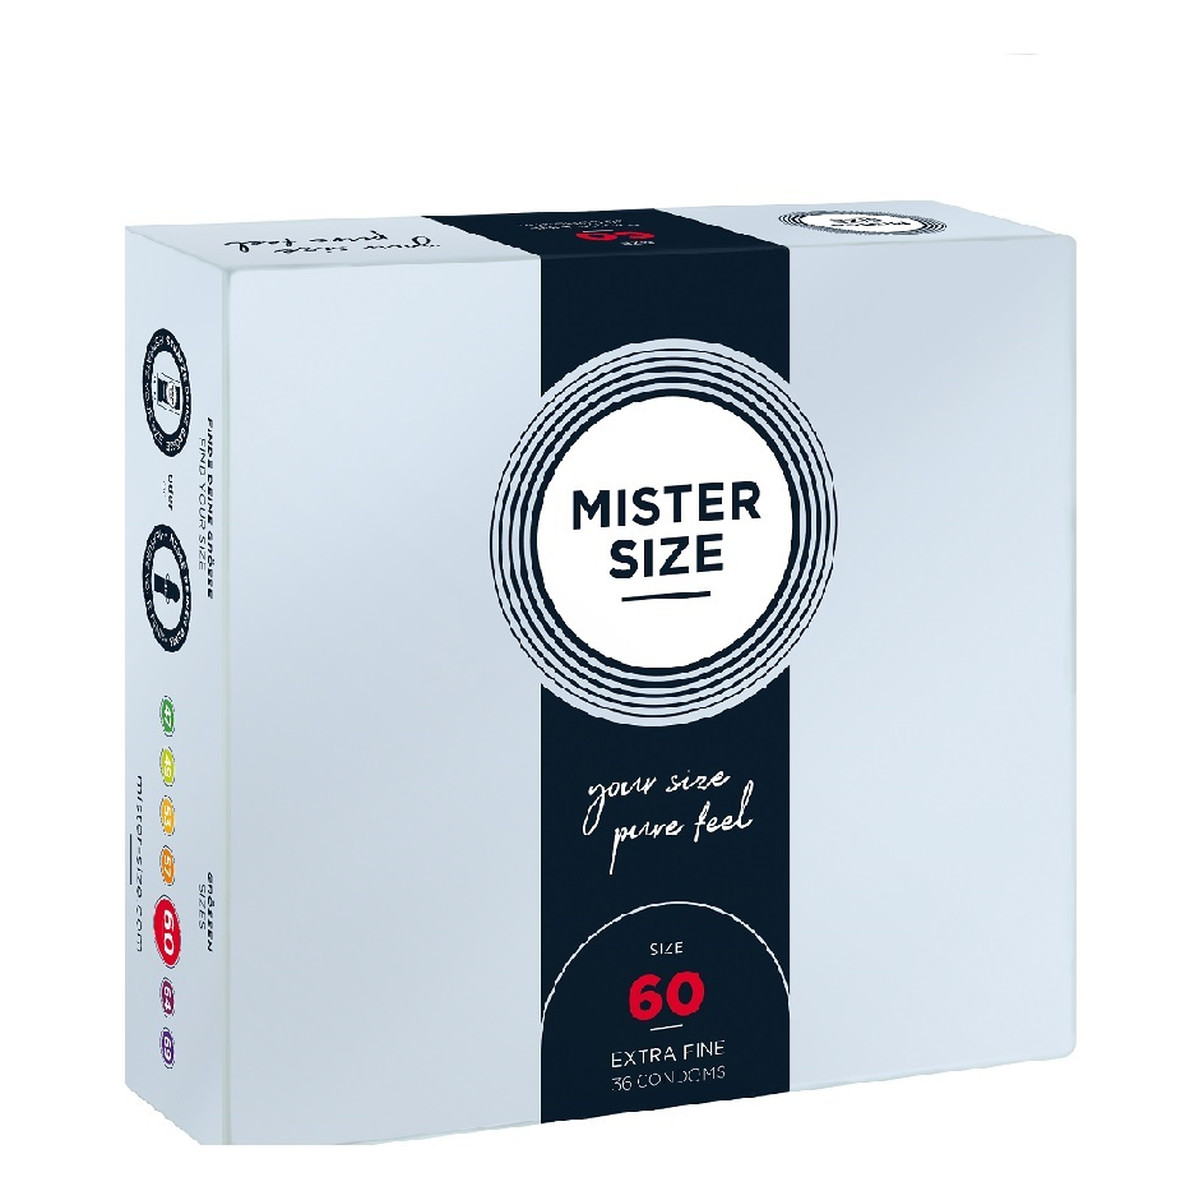 Mister Size Condoms prezerwatywy dopasowane do rozmiaru 60mm 36szt.